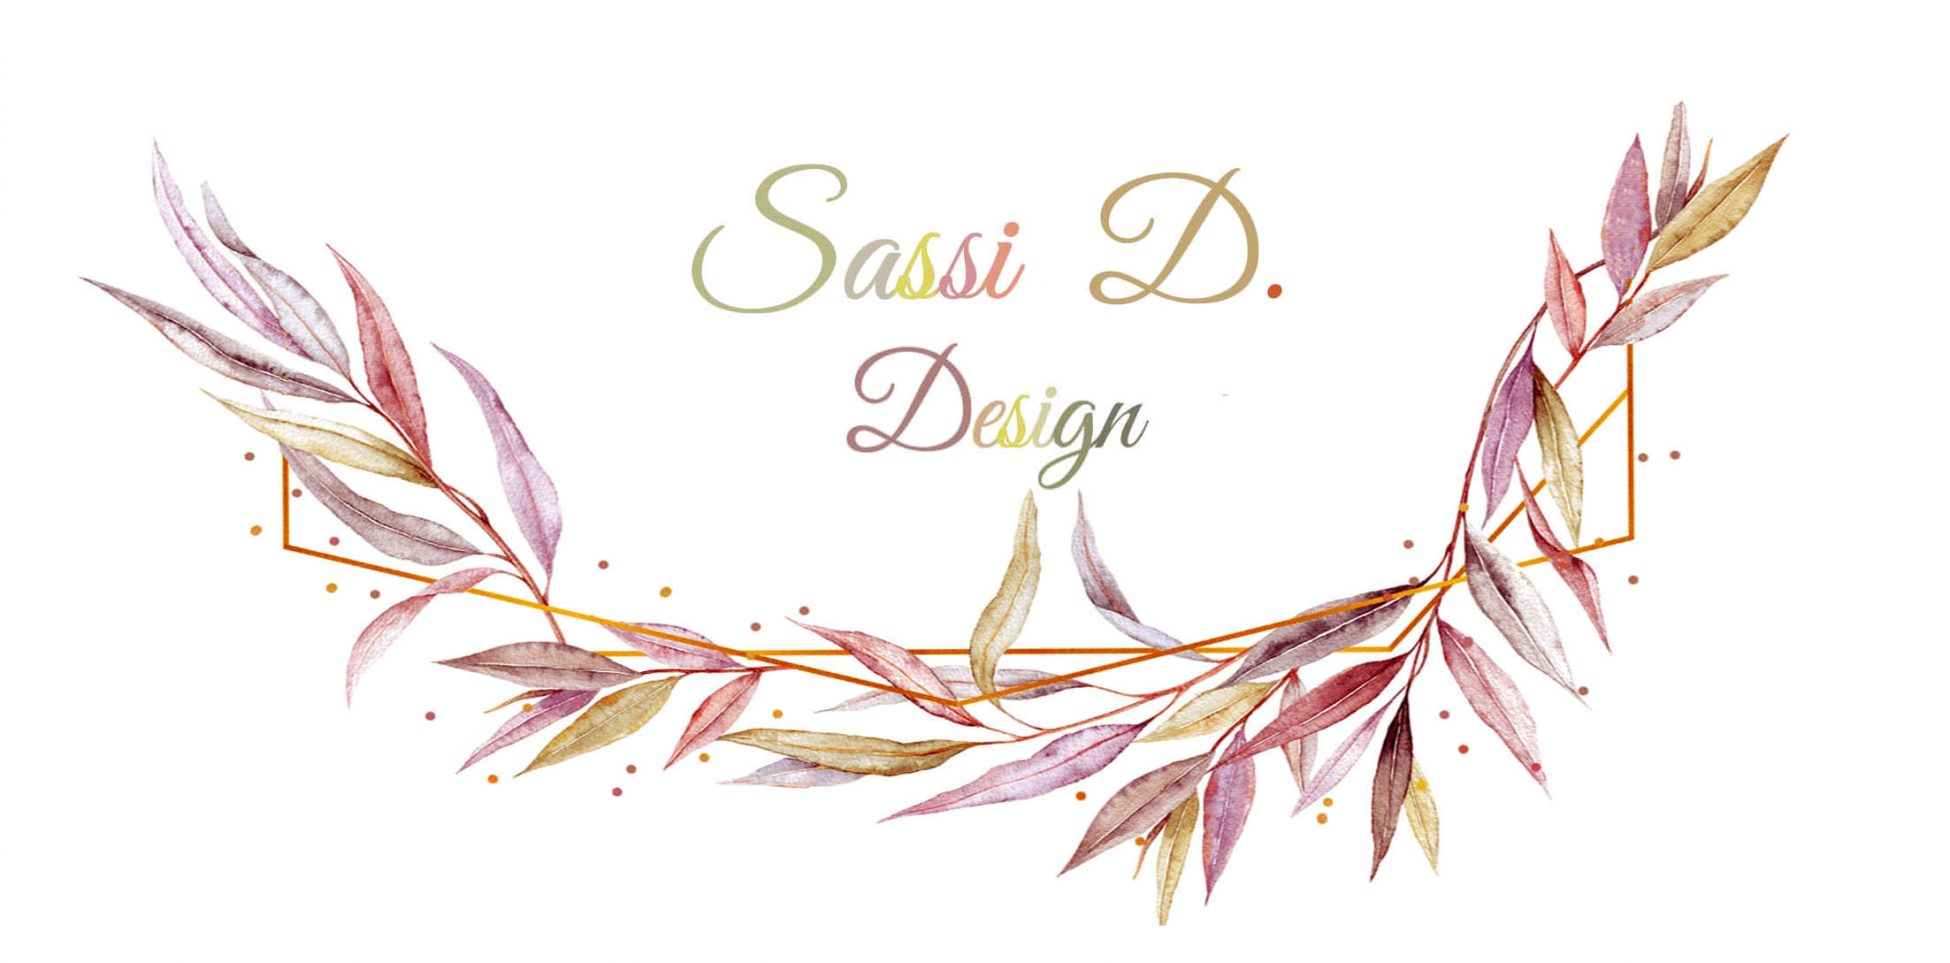 Sassi D. Design